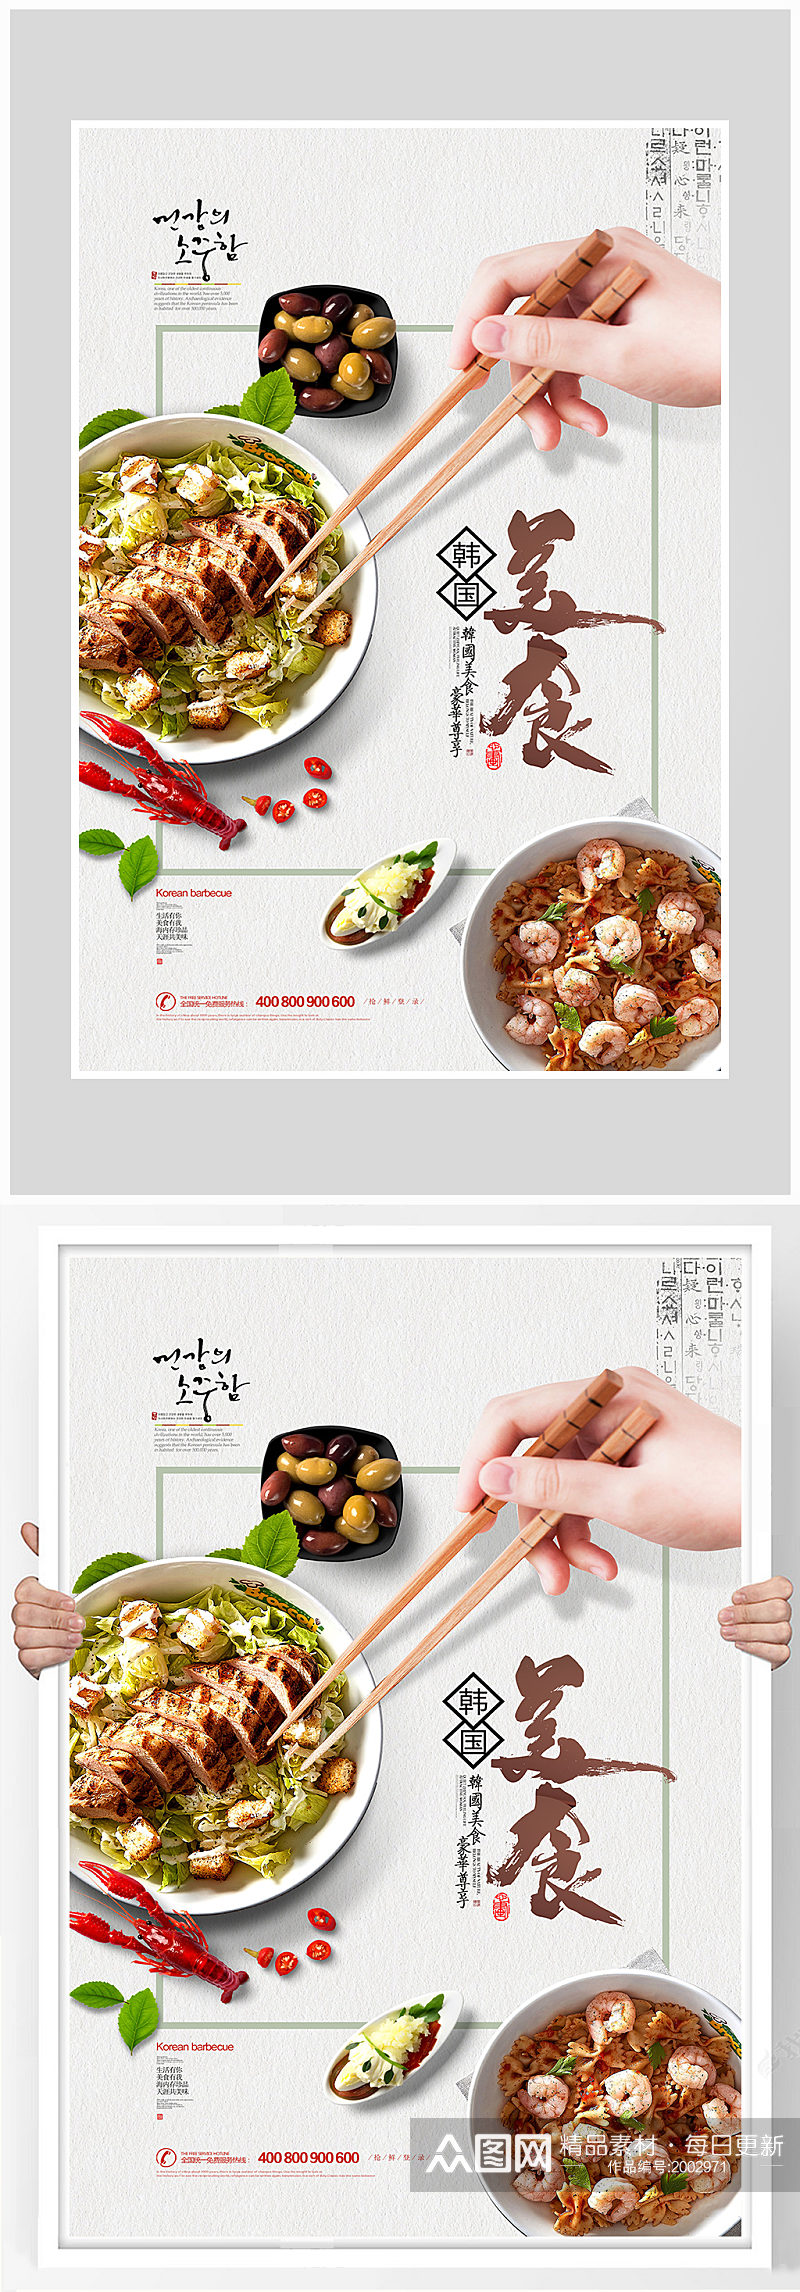 创意质感美食面条海报设计素材